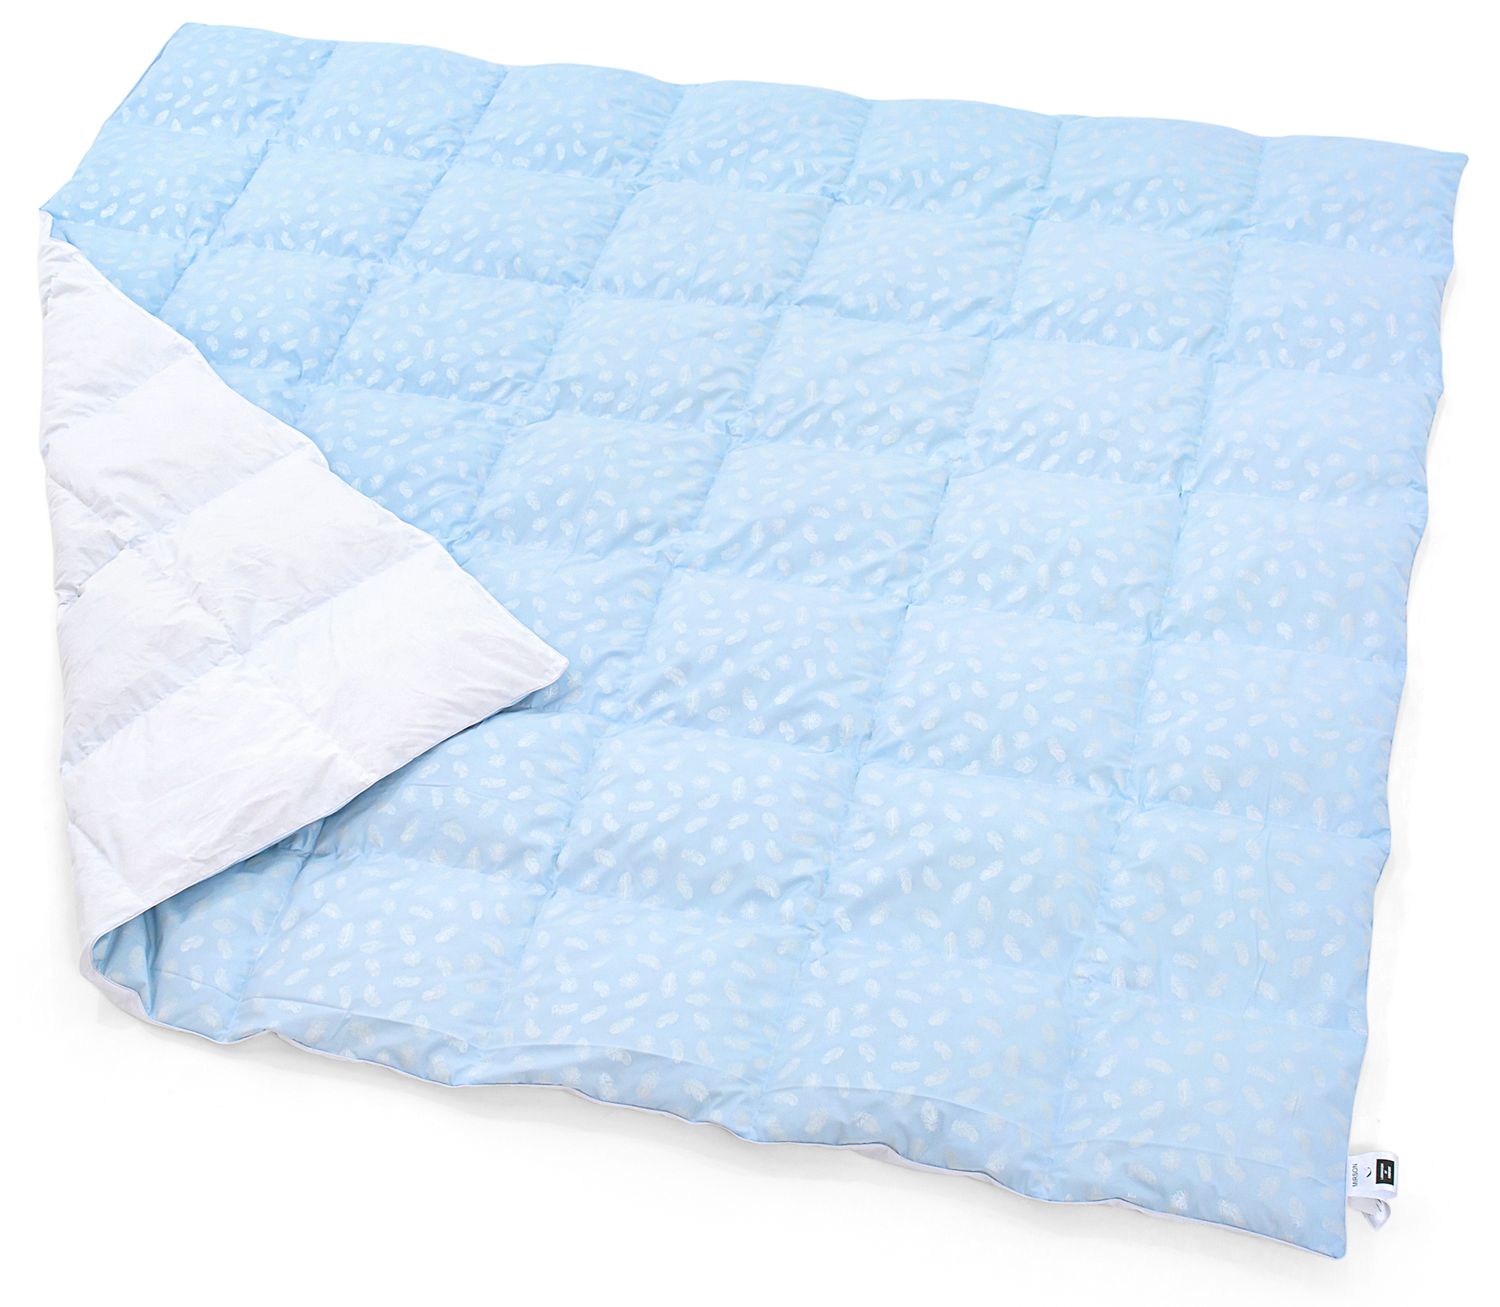 Одеяло пуховое MirSon Karmen №1846 Bio-Blue, 90% пух, полуторное, 215x155, голубое (2200003014105) - фото 2